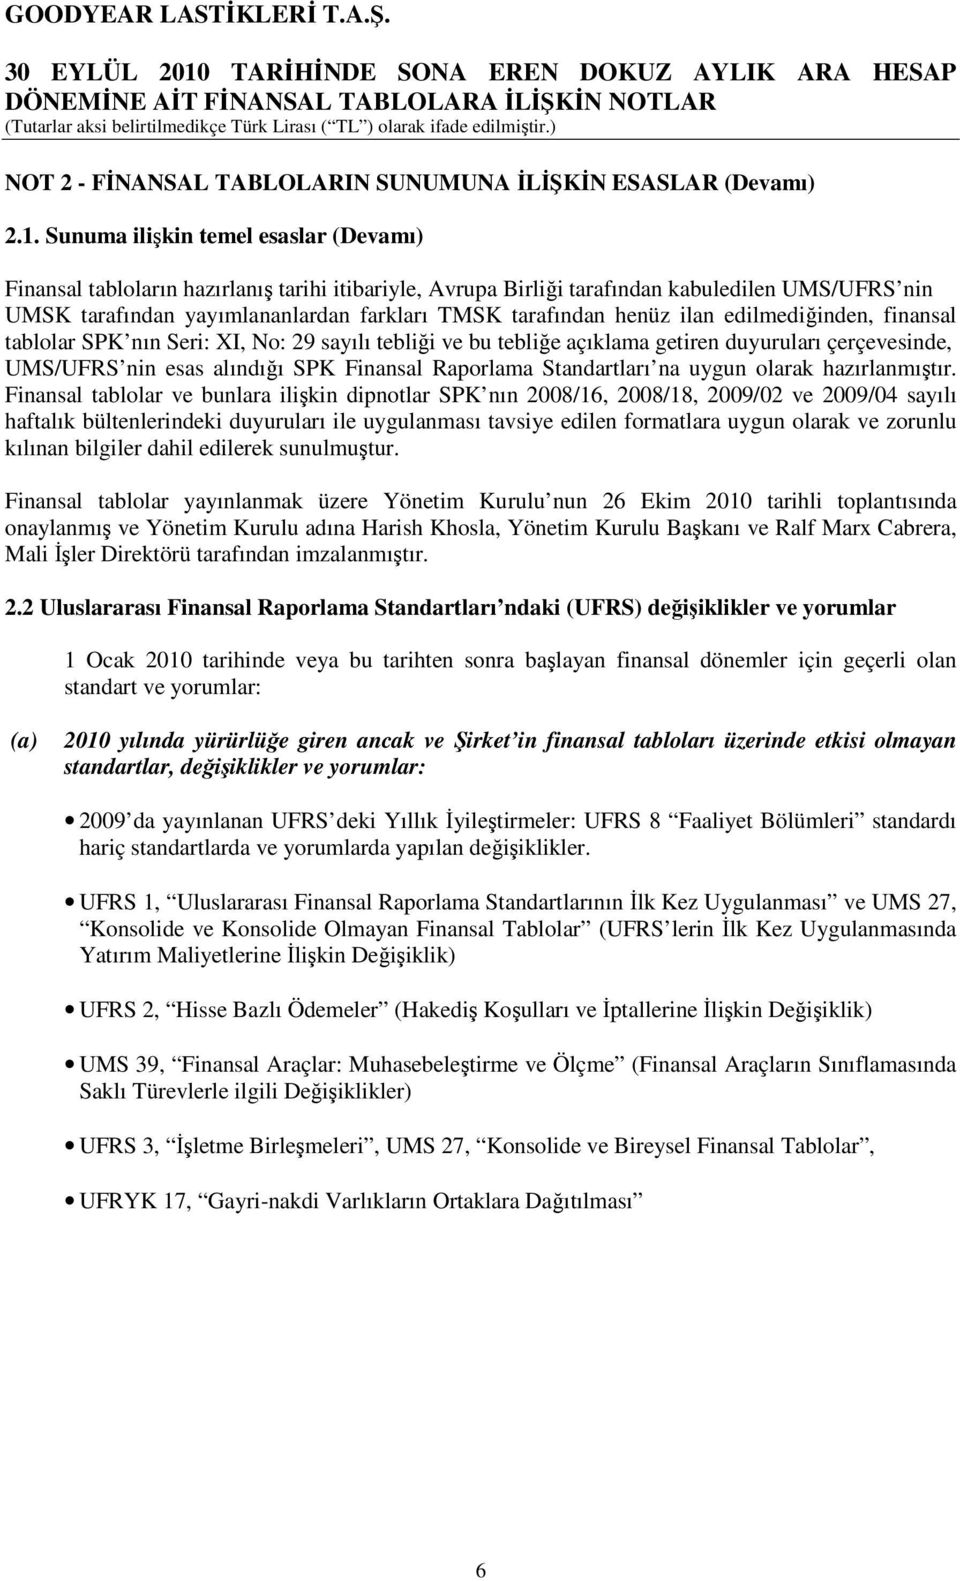 henüz ilan edilmediğinden, finansal tablolar SPK nın Seri: XI, No: 29 sayılı tebliği ve bu tebliğe açıklama getiren duyuruları çerçevesinde, UMS/UFRS nin esas alındığı SPK Finansal Raporlama